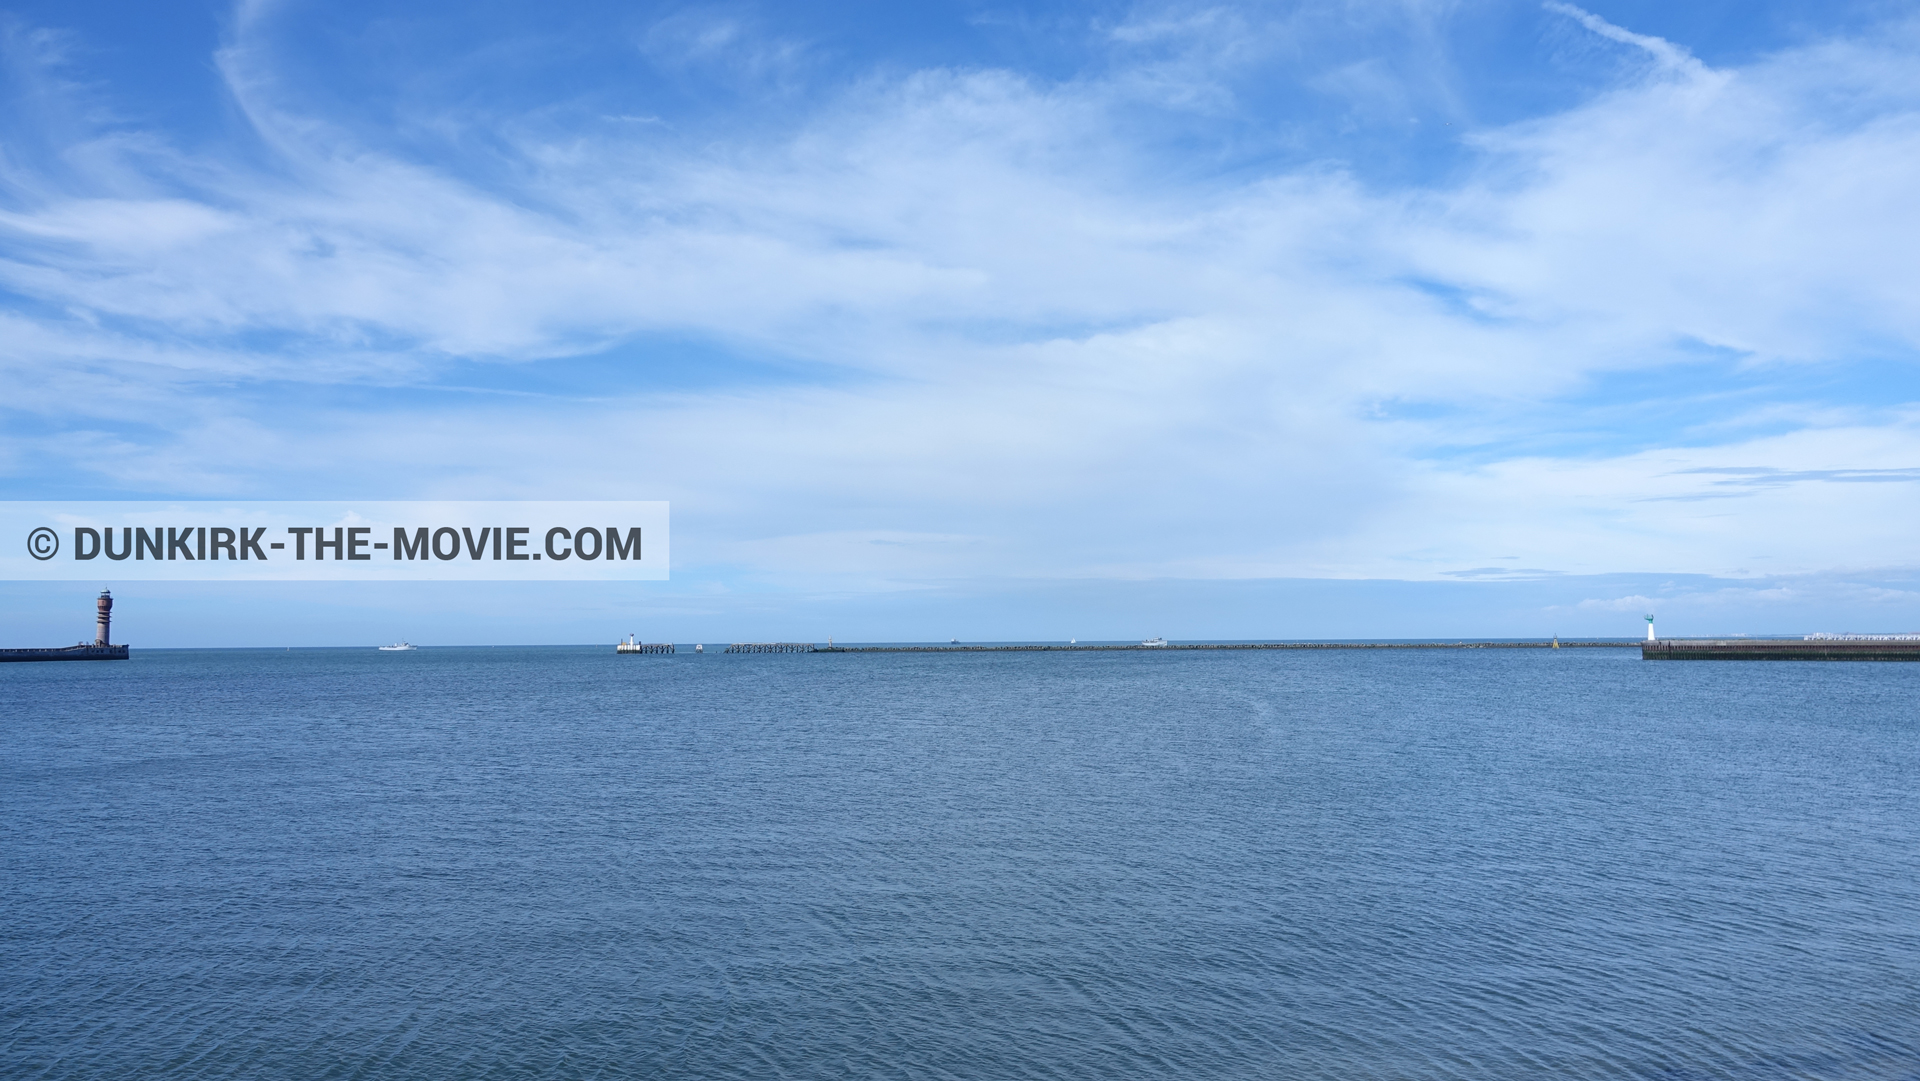 Fotos con barco, cielo nublado, mares calma, faro de Saint-Pol-sur-Mer,  durante el rodaje de la película Dunkerque de Nolan